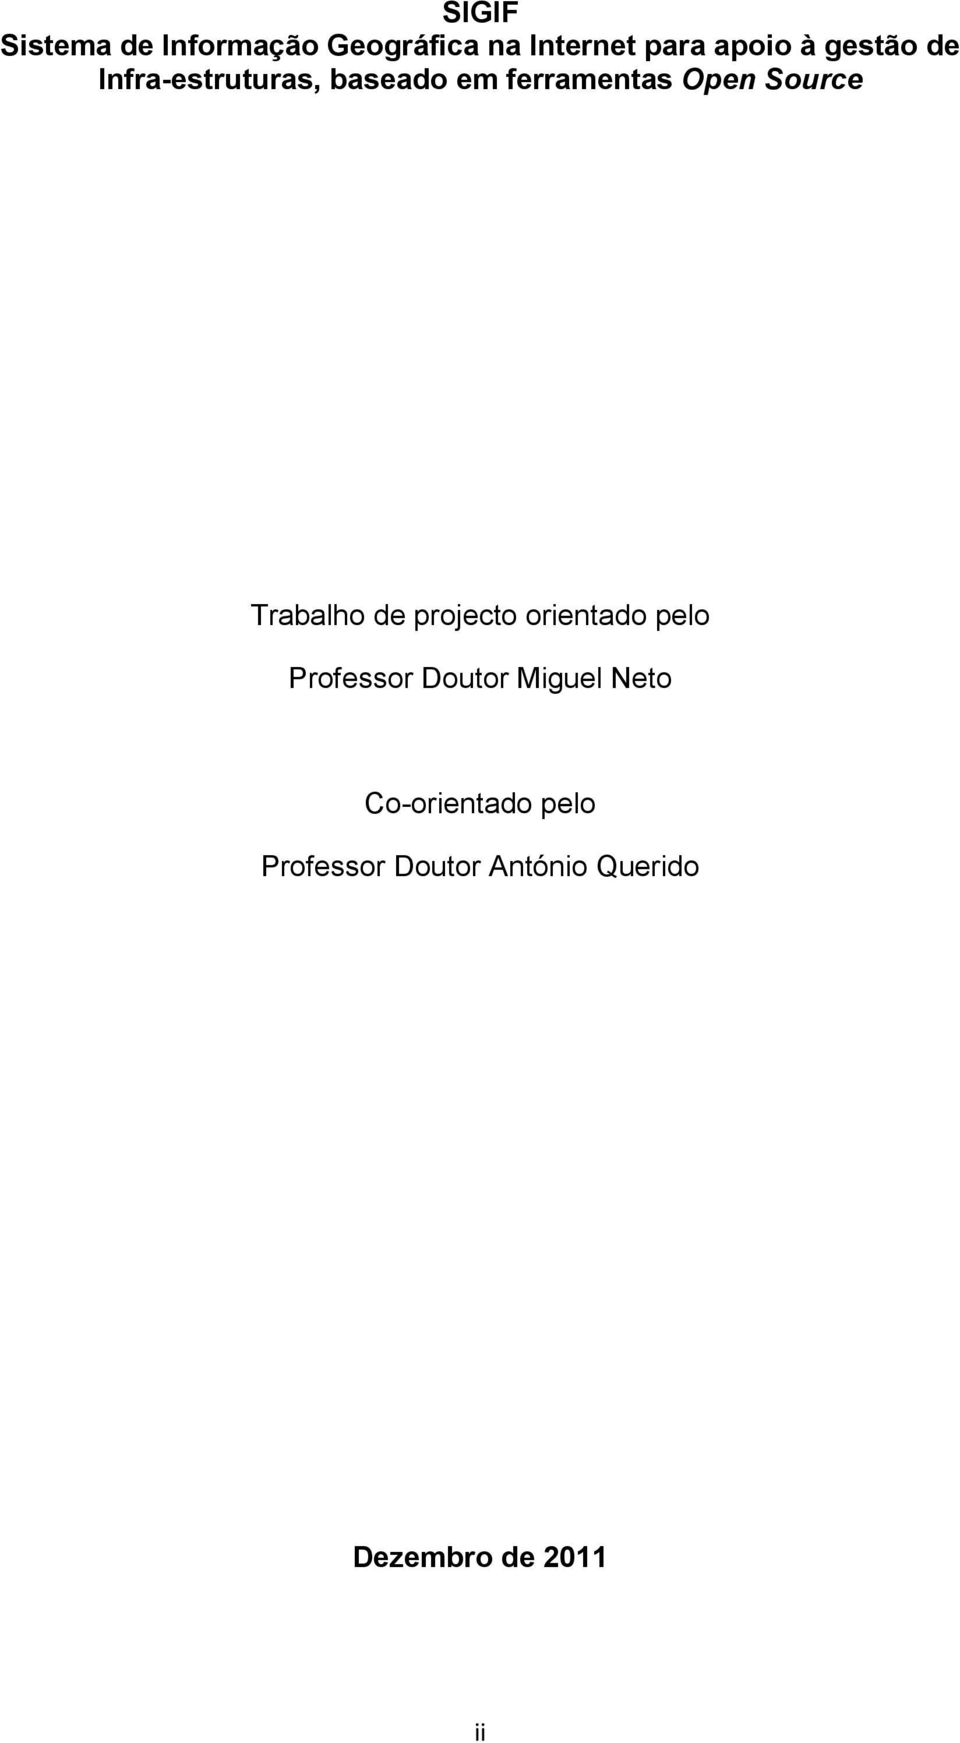 Trabalho de projecto orientado pelo Professor Doutor Miguel Neto